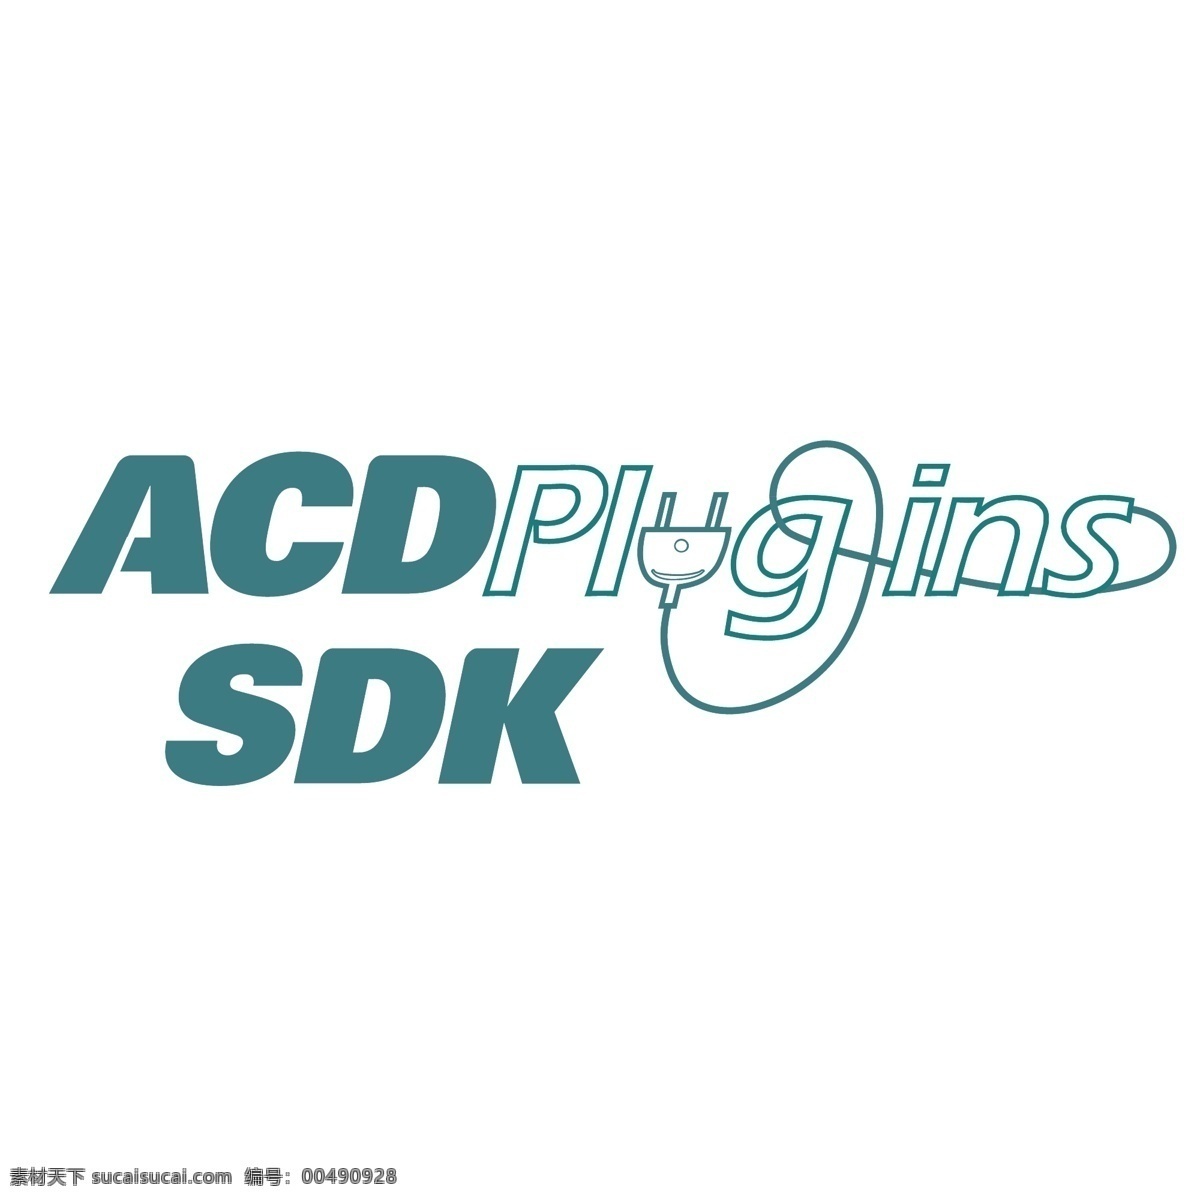 sdk插件 acd 标识 公司 免费 品牌 品牌标识 商标 矢量标志下载 免费矢量标识 矢量 psd源文件 logo设计